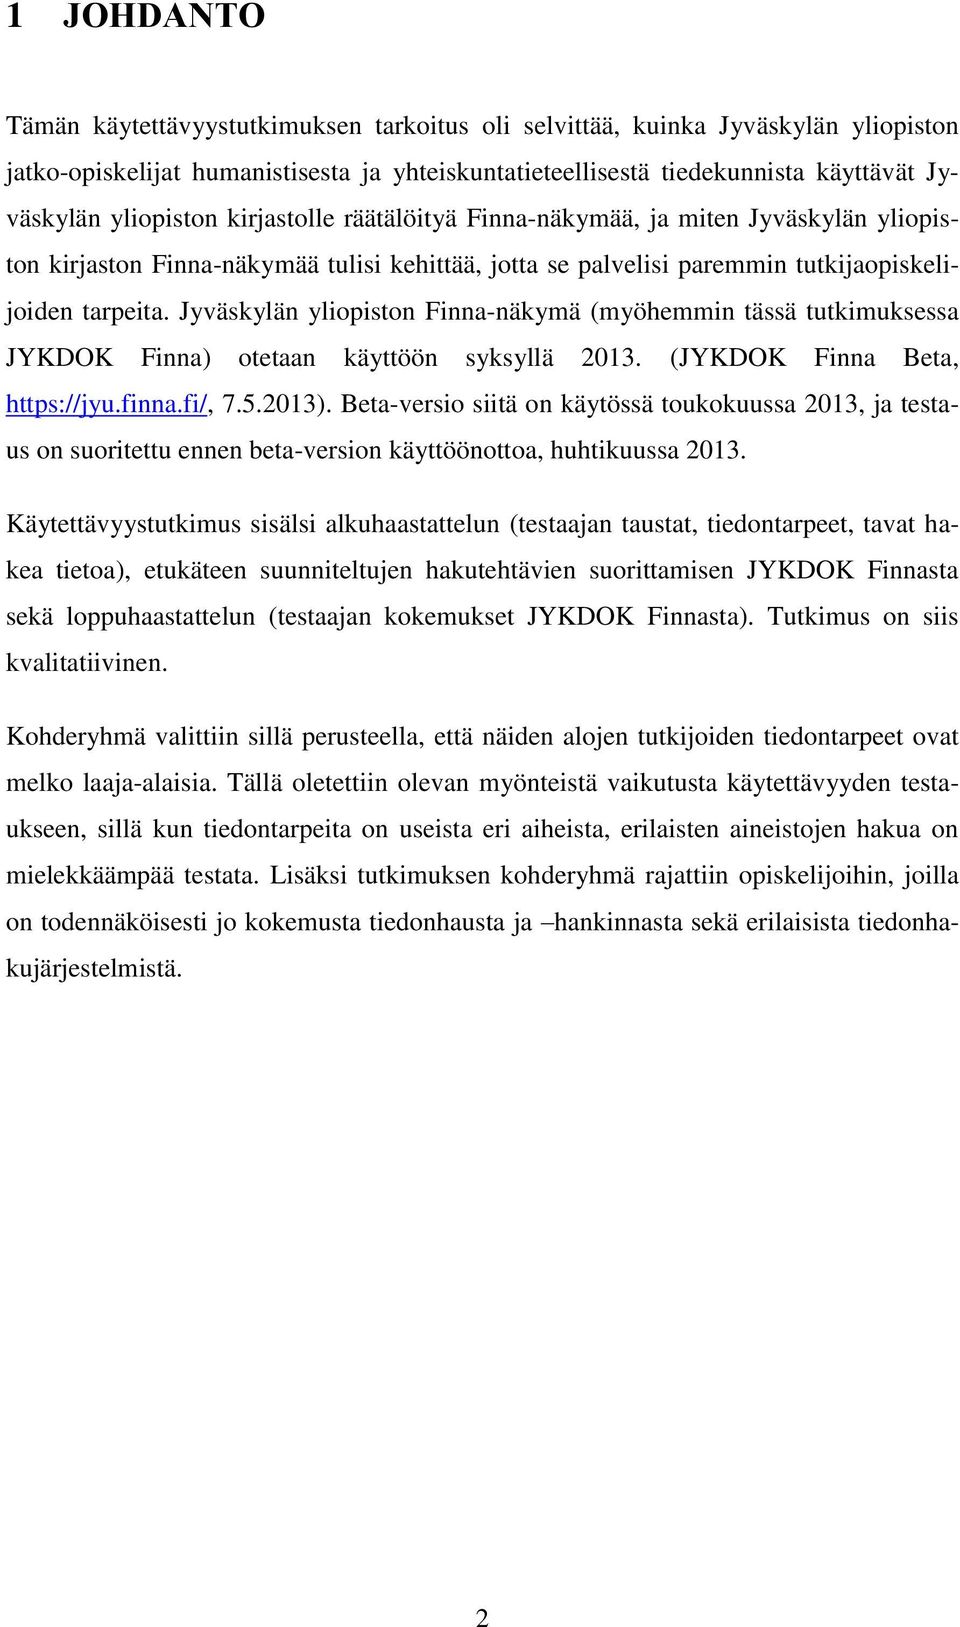 Jyväskylän yliopiston Finna-näkymä (myöhemmin tässä tutkimuksessa JYKDOK Finna) otetaan käyttöön syksyllä 2013. (JYKDOK Finna Beta, https://jyu.finna.fi/, 7.5.2013).